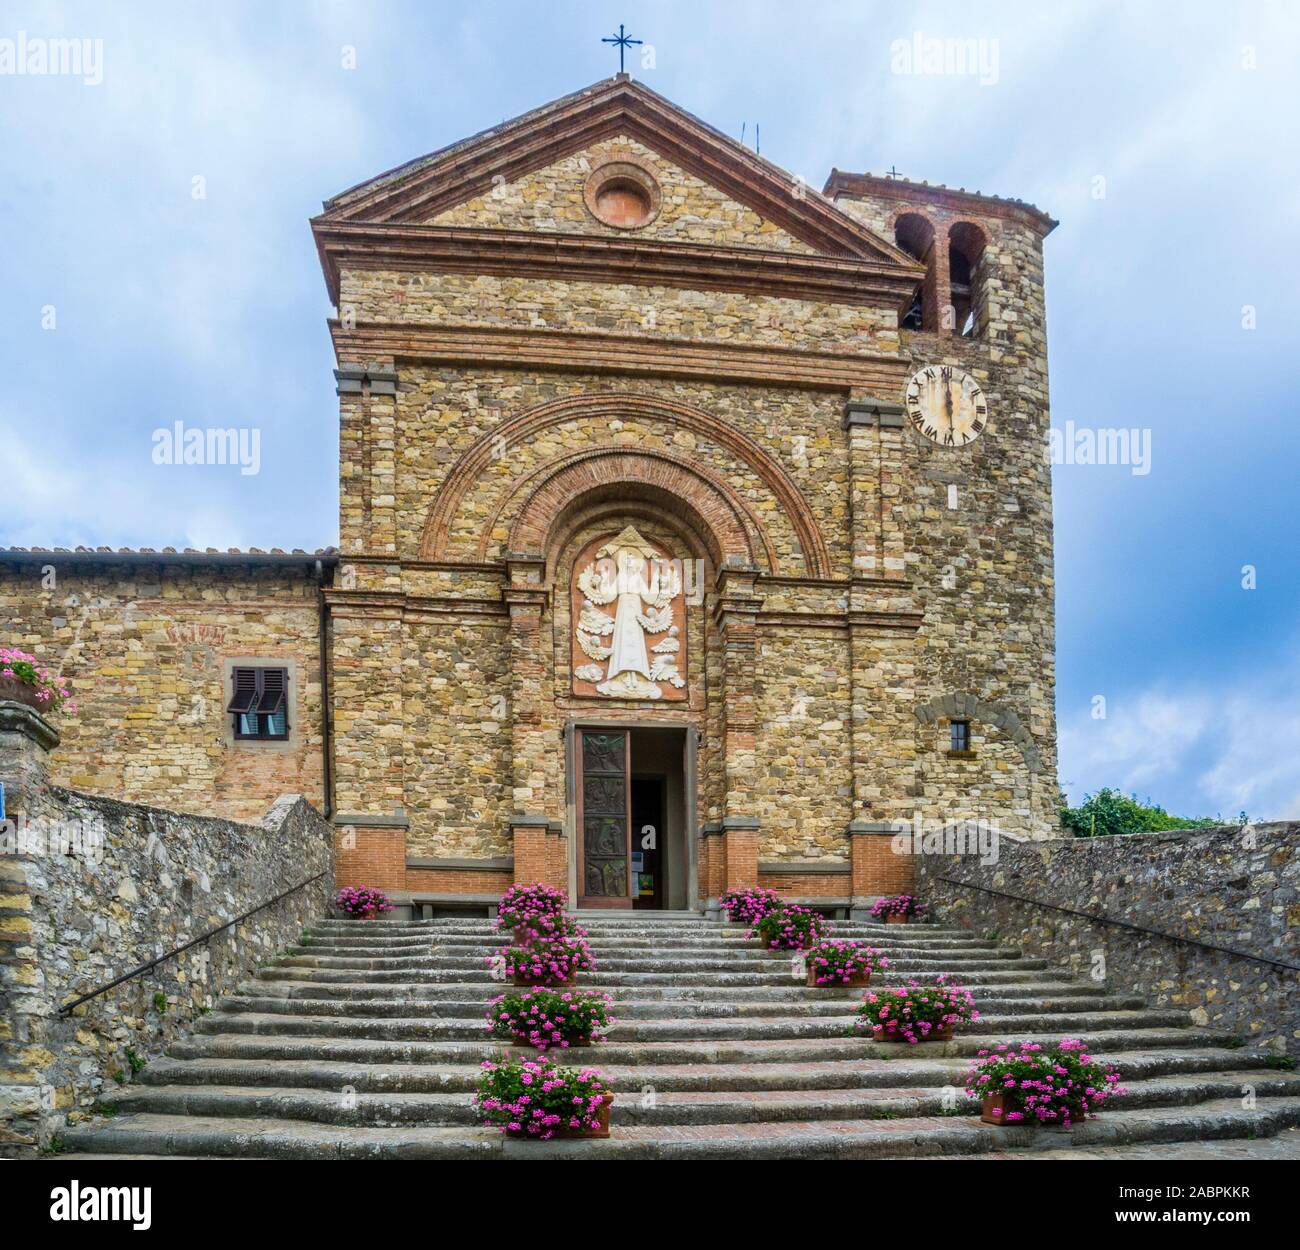 Church of  Santa Maria Assunta, Panzano in Chianti, in the rural region of Chianti, province of Siena, Tuscany, Italy Stock Photo